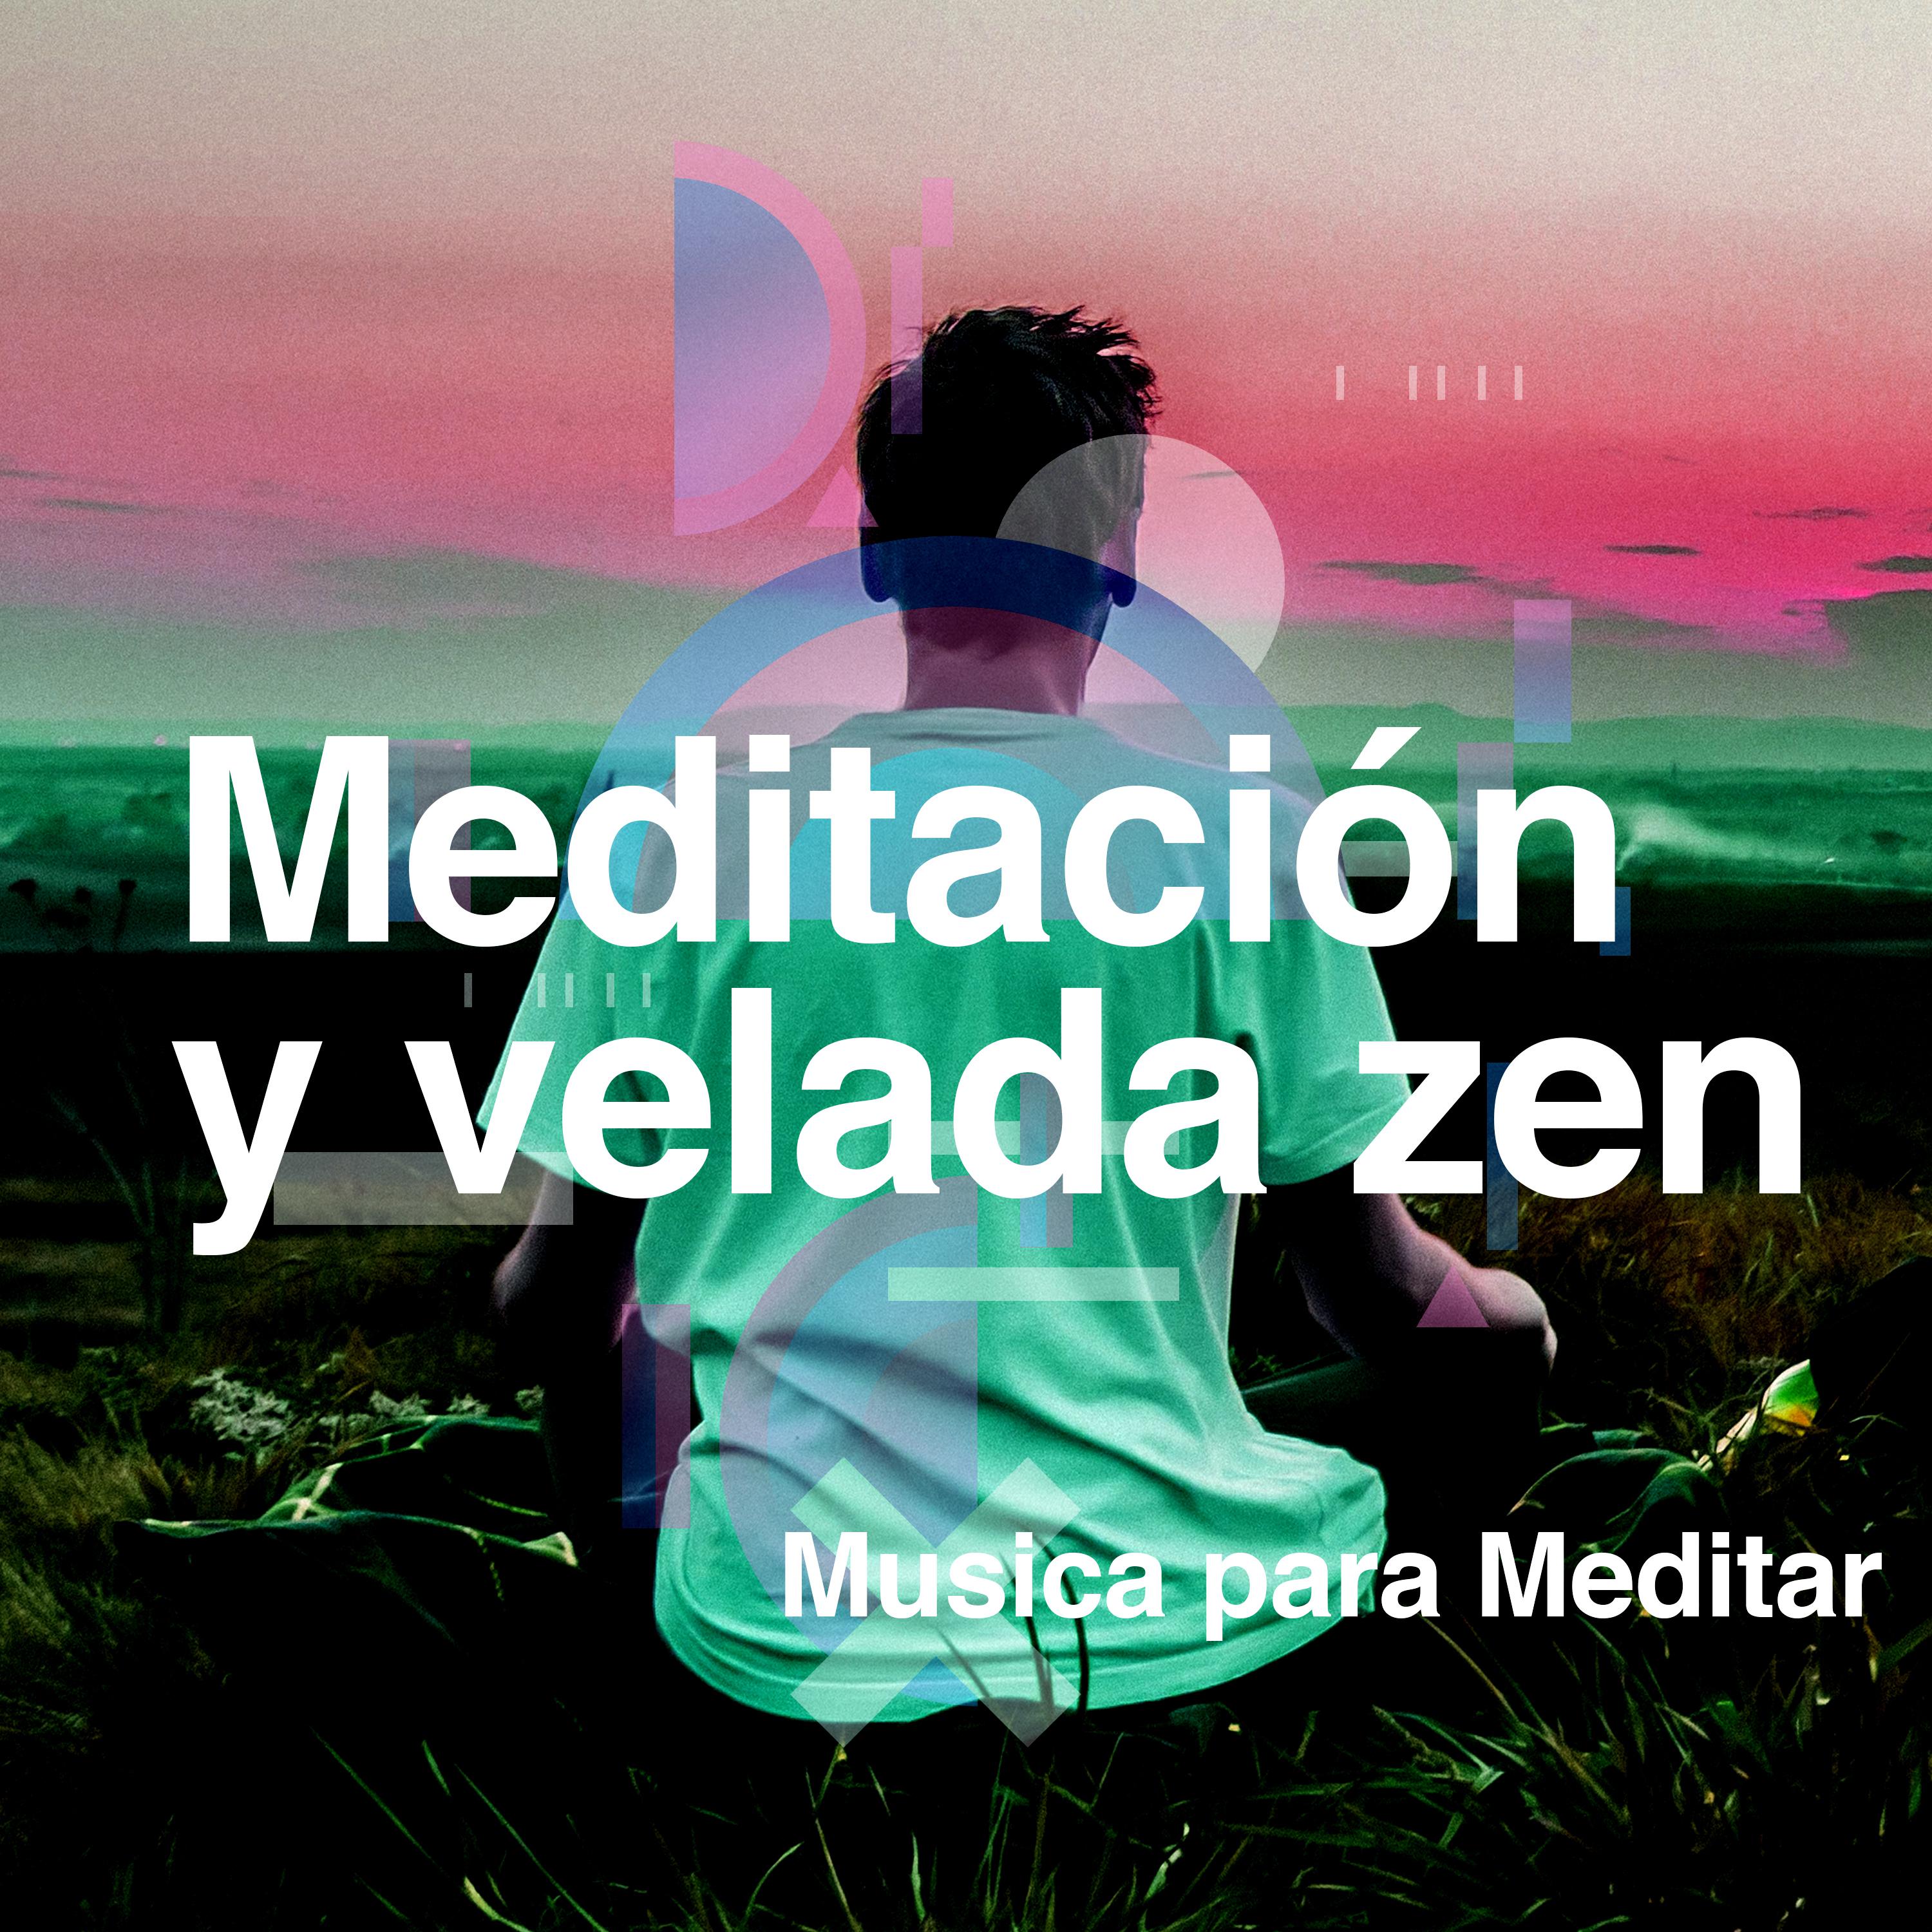 Meditacio n y velada zen